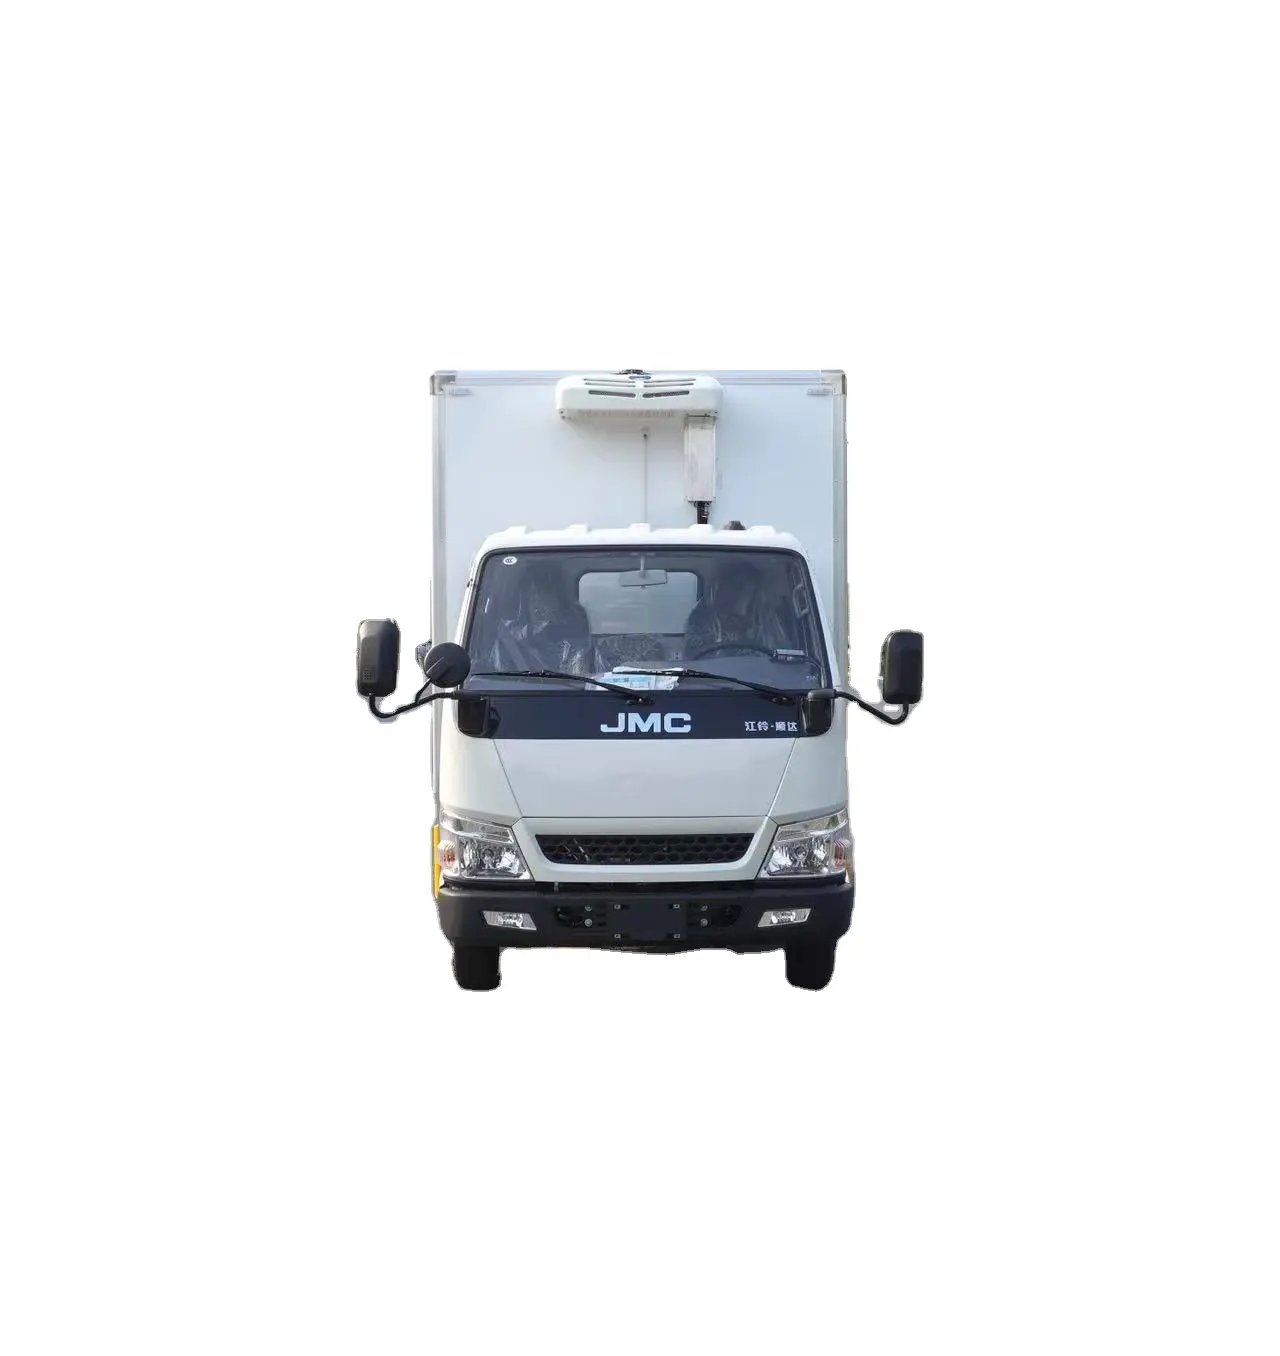 JMC diesel freezer kecil makanan es krim ruang dingin van truk berpendingin untuk dijual truk lain